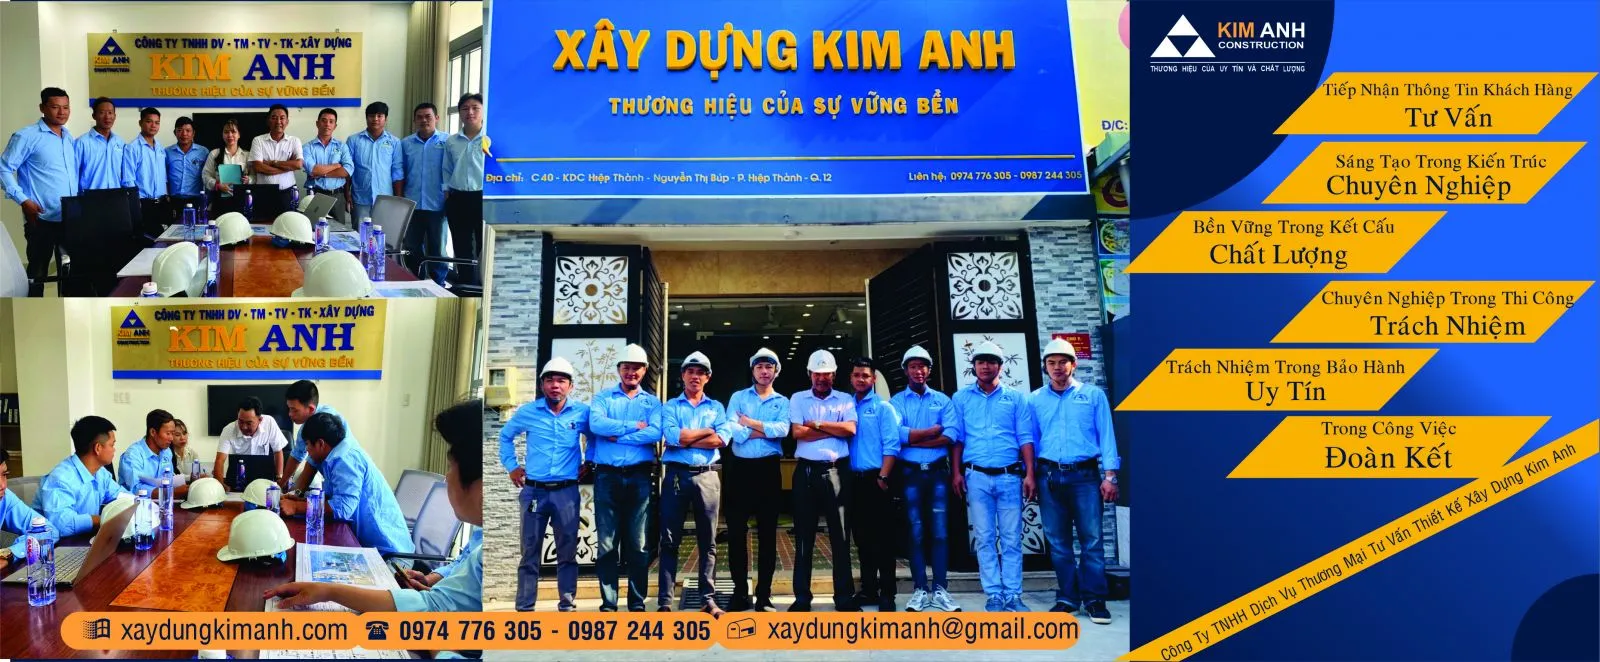 Xây nhà trọn gói Quận Tân Bình - xaydungkimanh.com